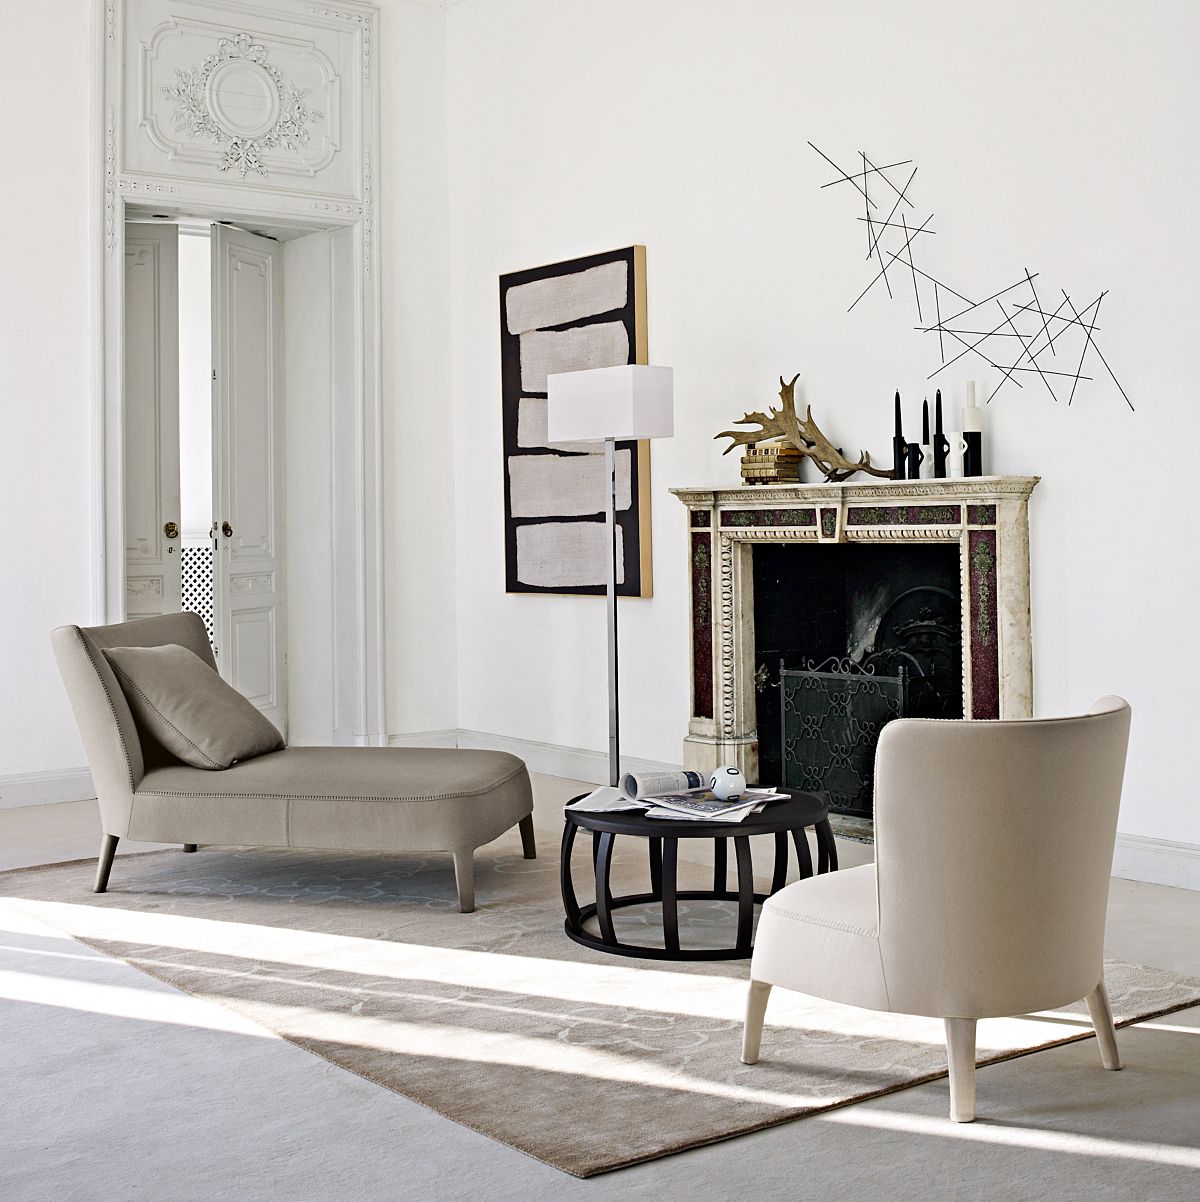 Febo stoelen en fauteuils van Maxalto zijn een herinnering aan klassiek design. 